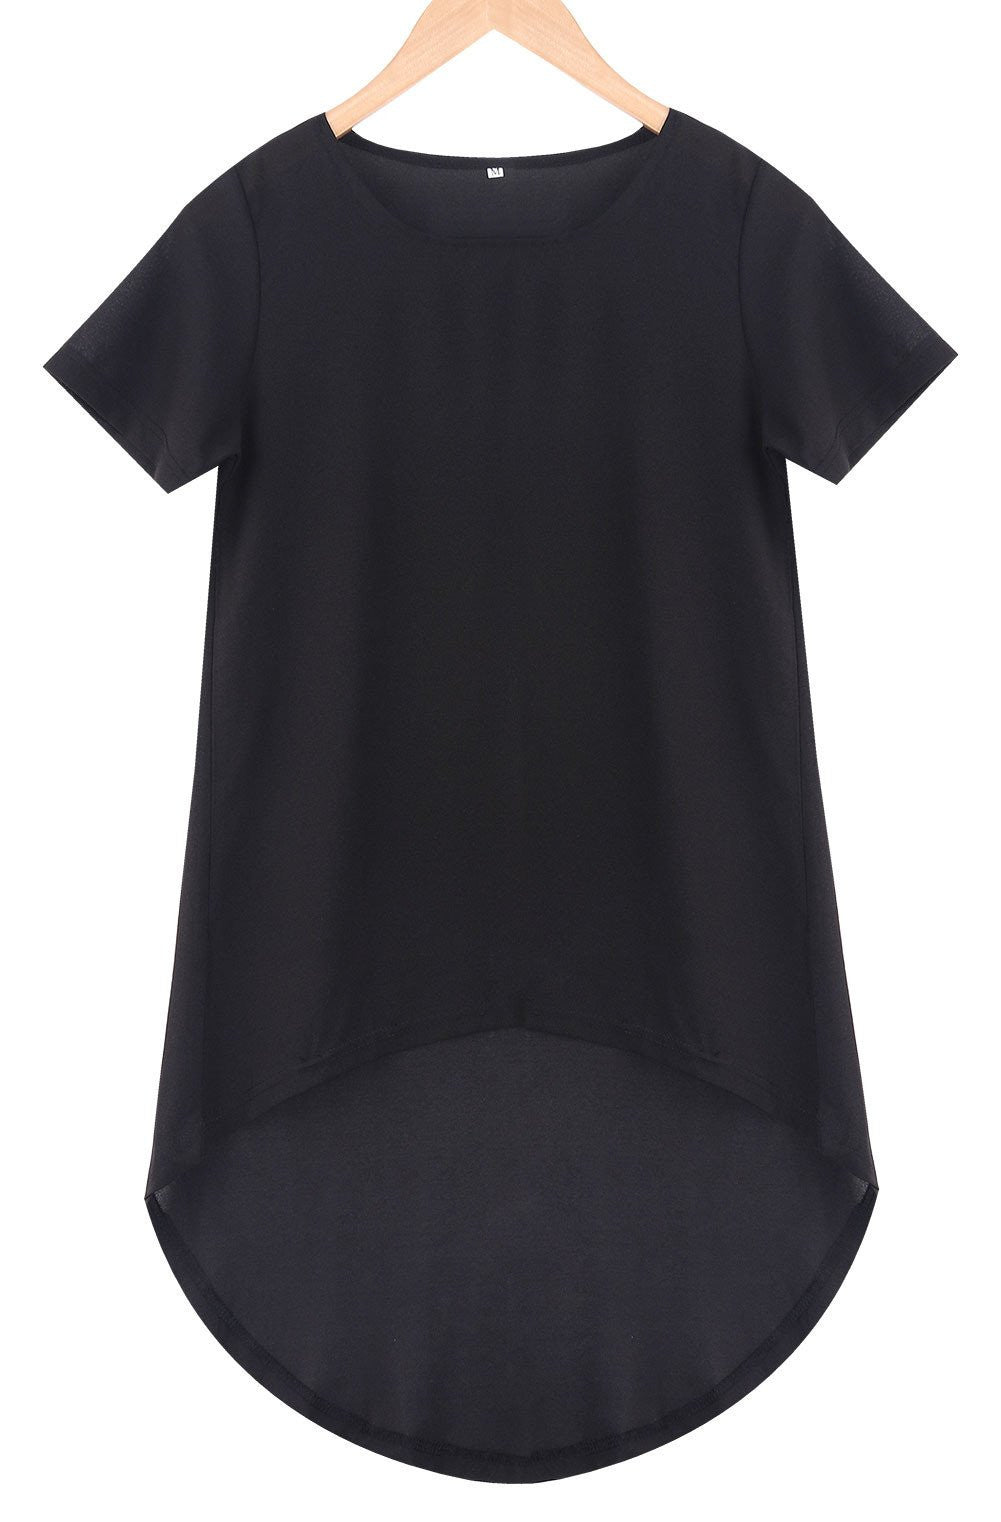 Women Casual Black Loose Short Sleeve Chiffon Shirt Top Plus Size T-Shirts